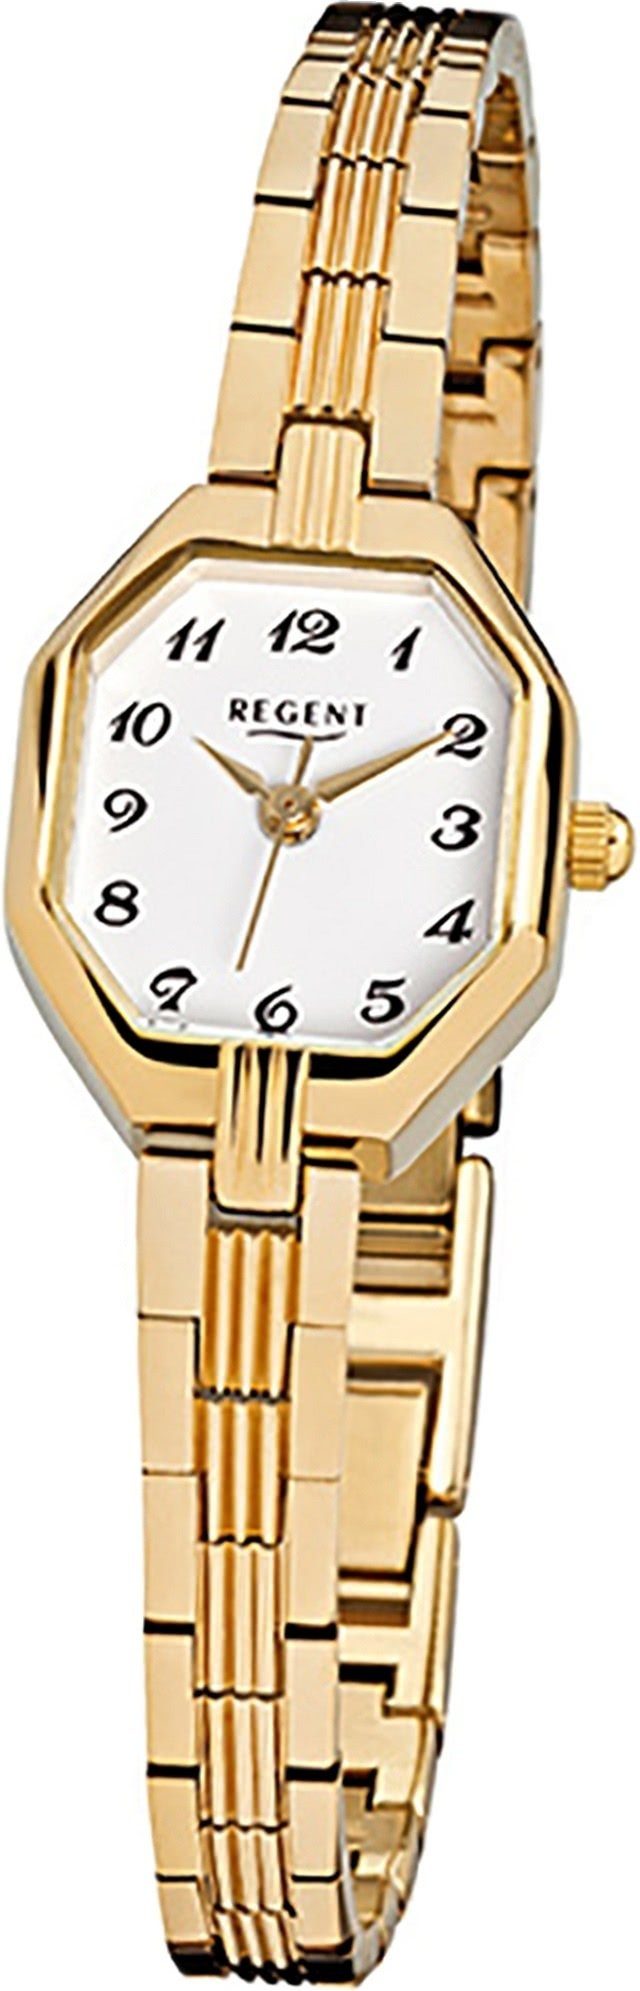 Regent Quarzuhr Regent (ca Damenuhr eckiges Damen Uhr Stahl Edelstahl, klein Gehäuse, Quarzuhr, 19x22mm) ionenplattiert F-305